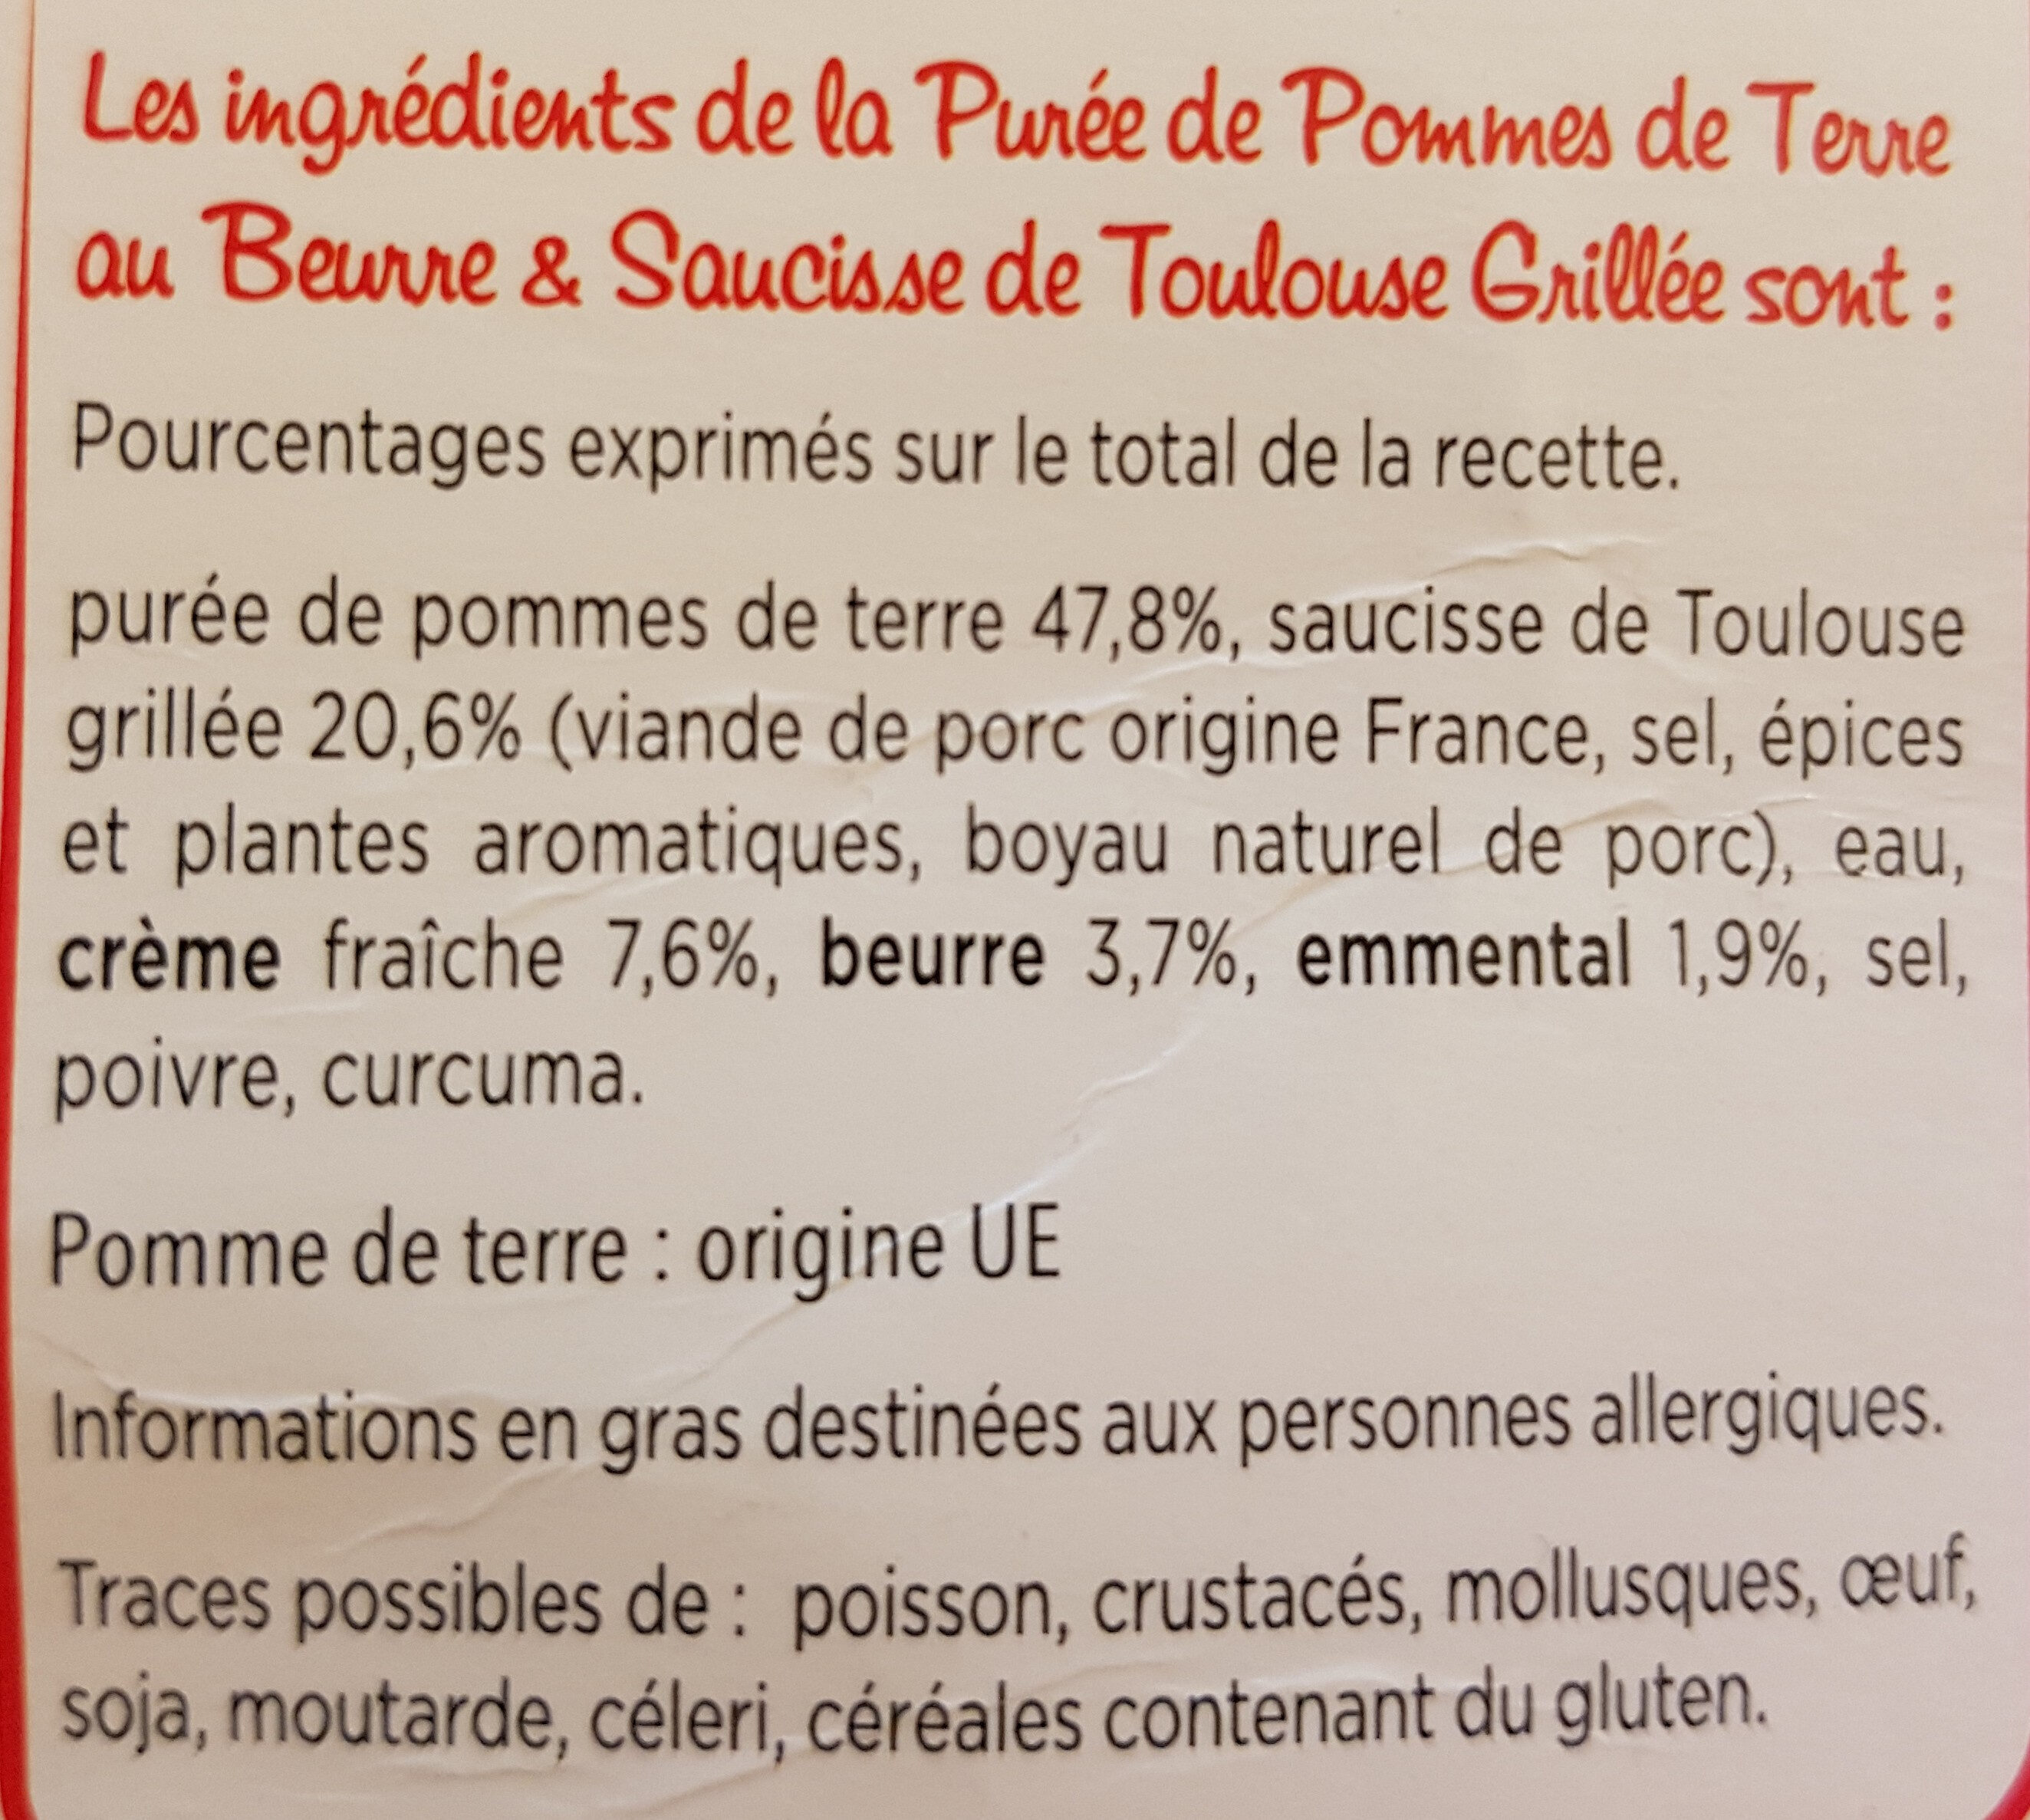 Saucisse de Toulouse grillée & purée au beurre - Ingredients - fr